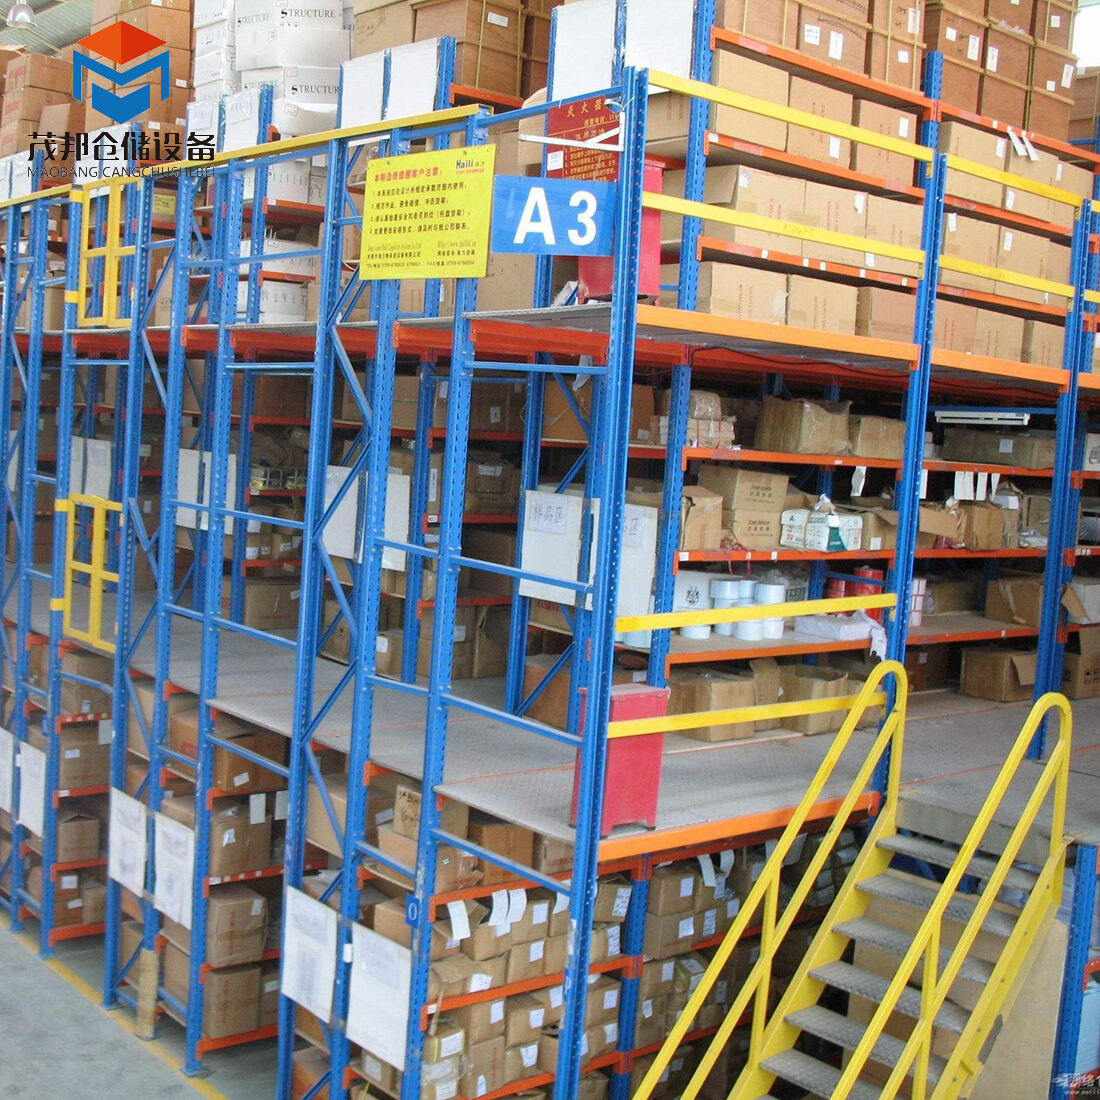 Fábrica de pisos de estanterías de entresuelo de carga alta multinivel para almacén con sistema de estanterías de acero de entrepiso de alta resistencia